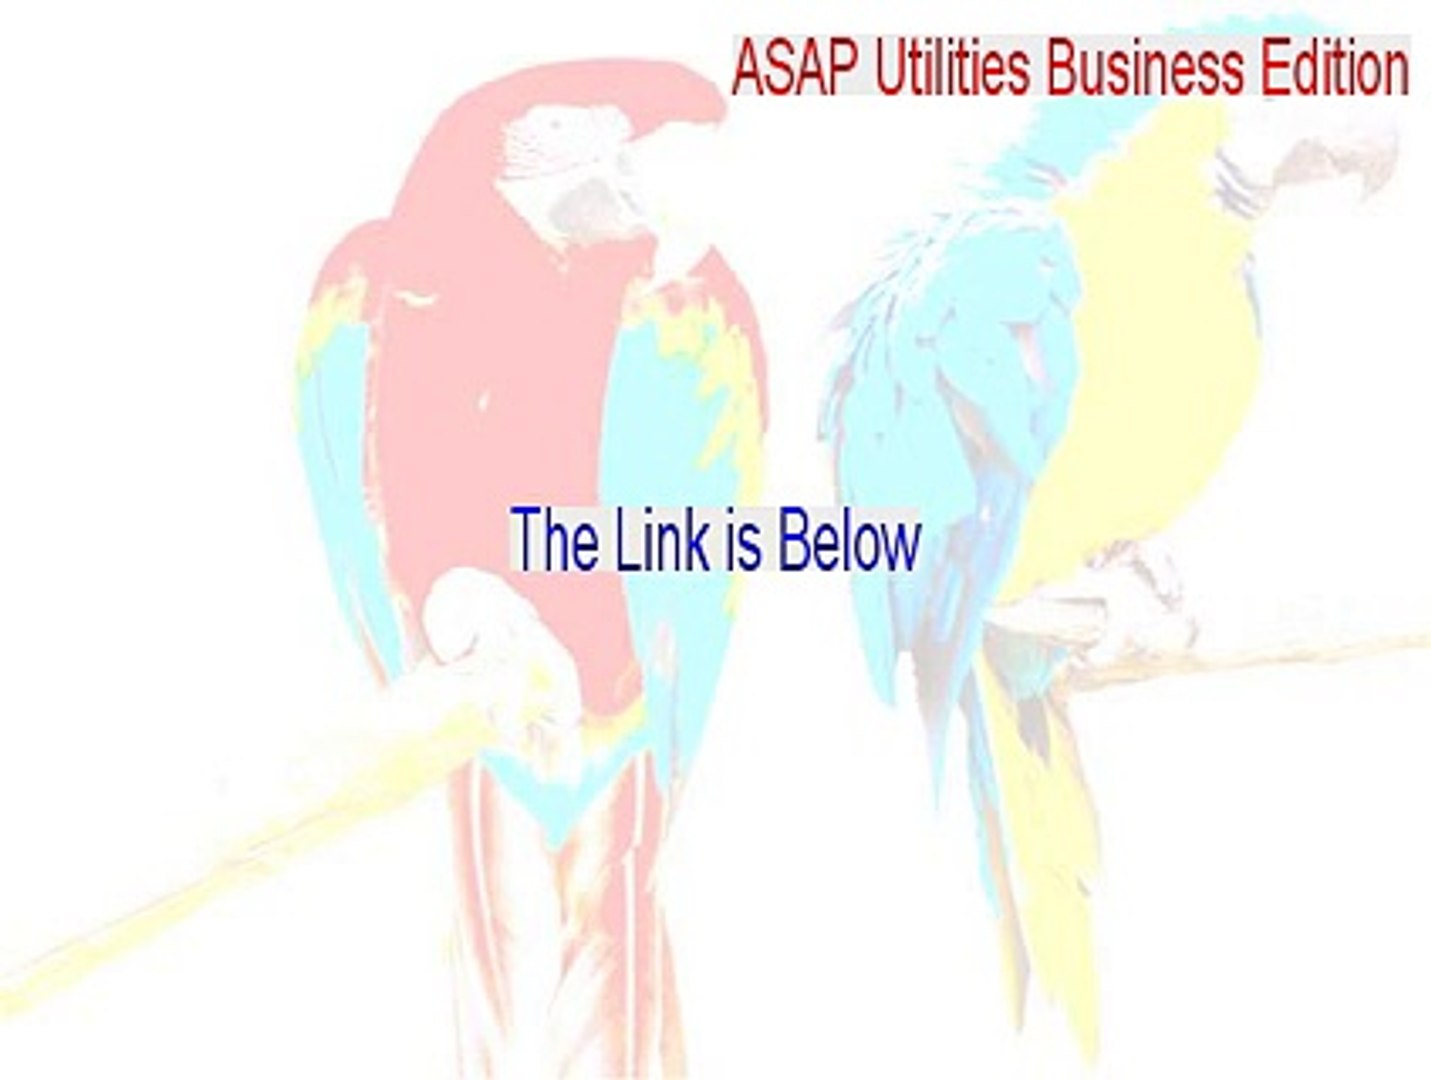 Asap utilities review